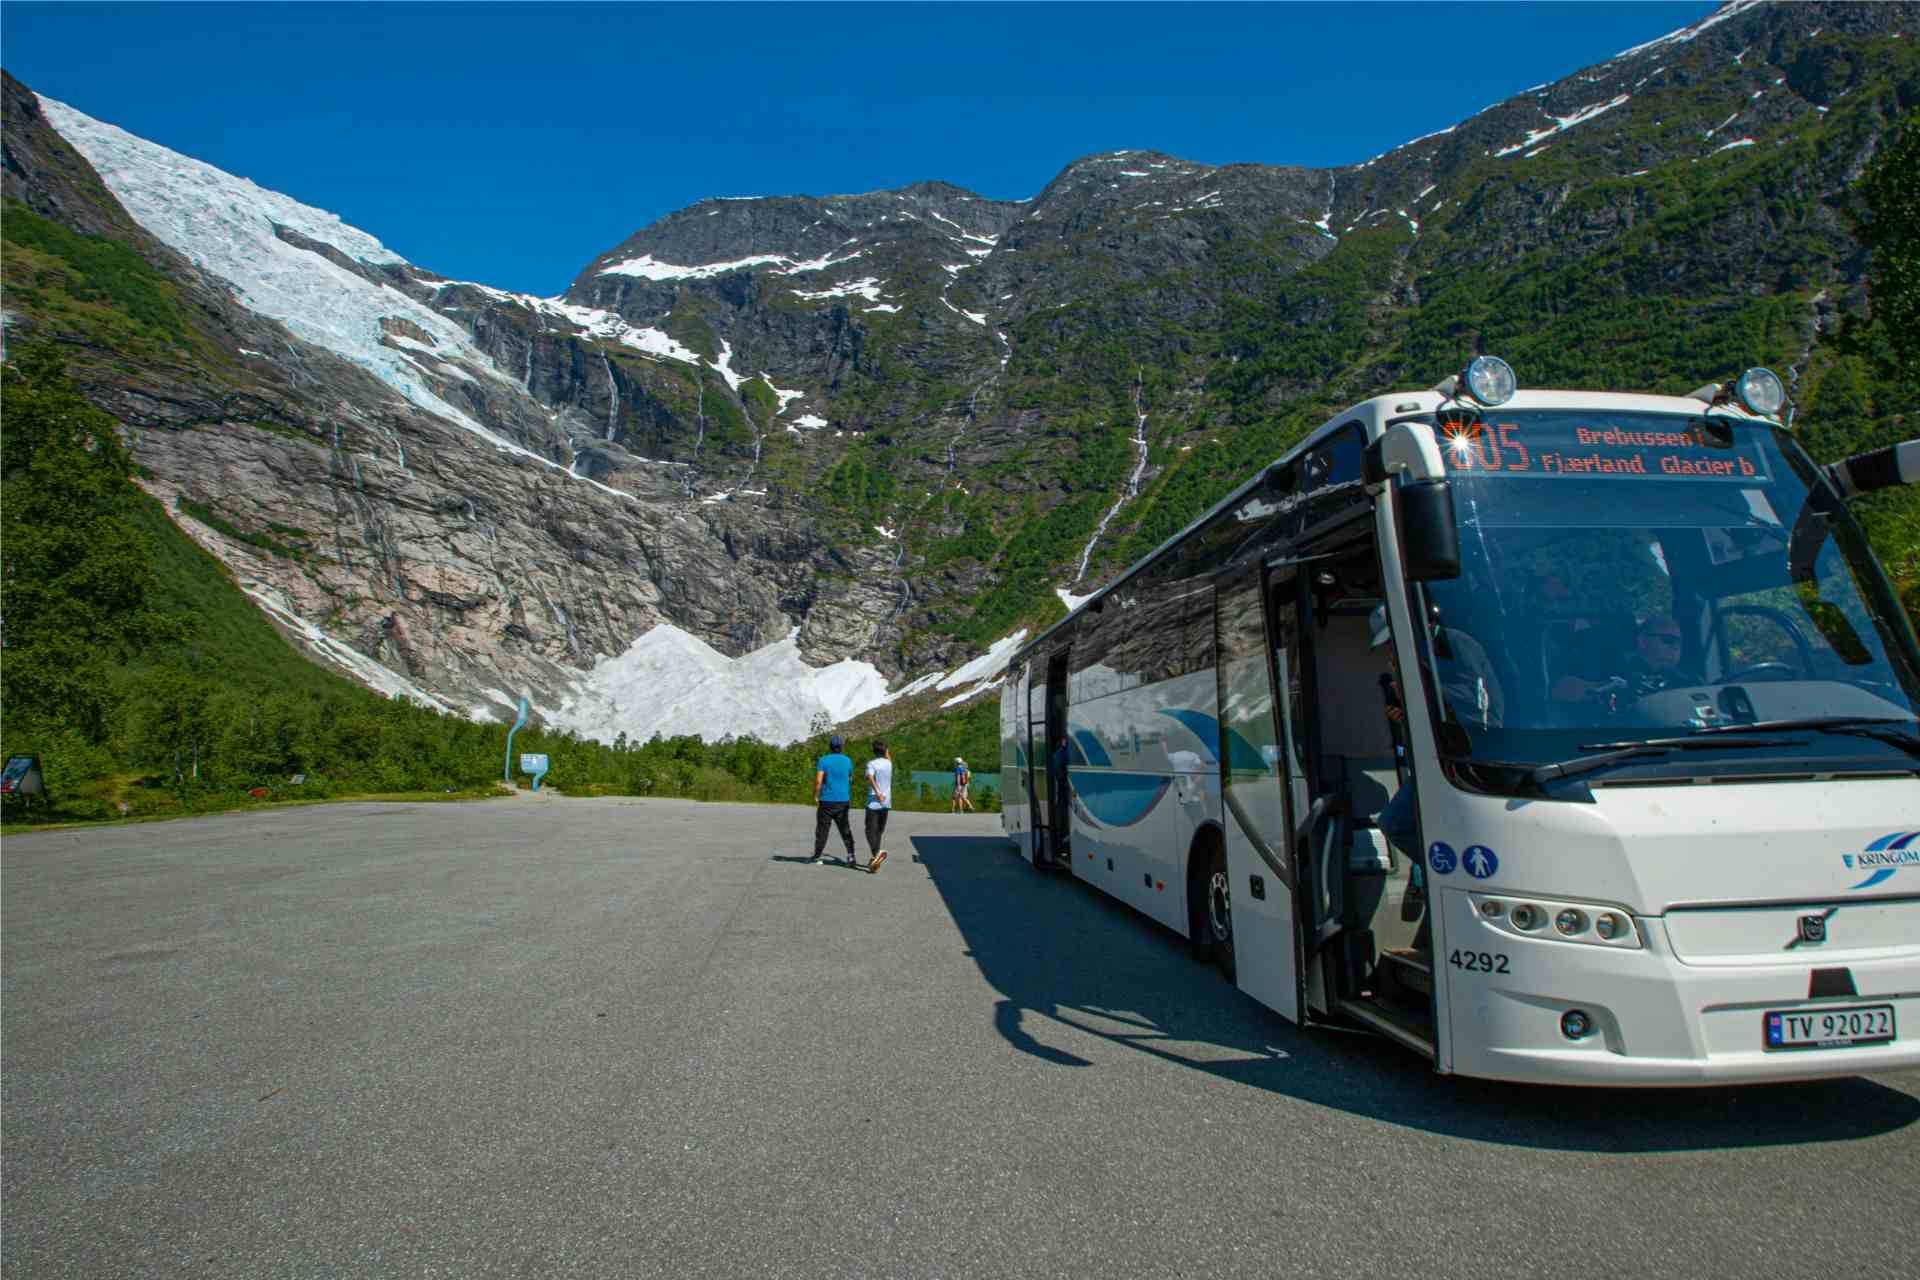 Glacierbus in Fjærland